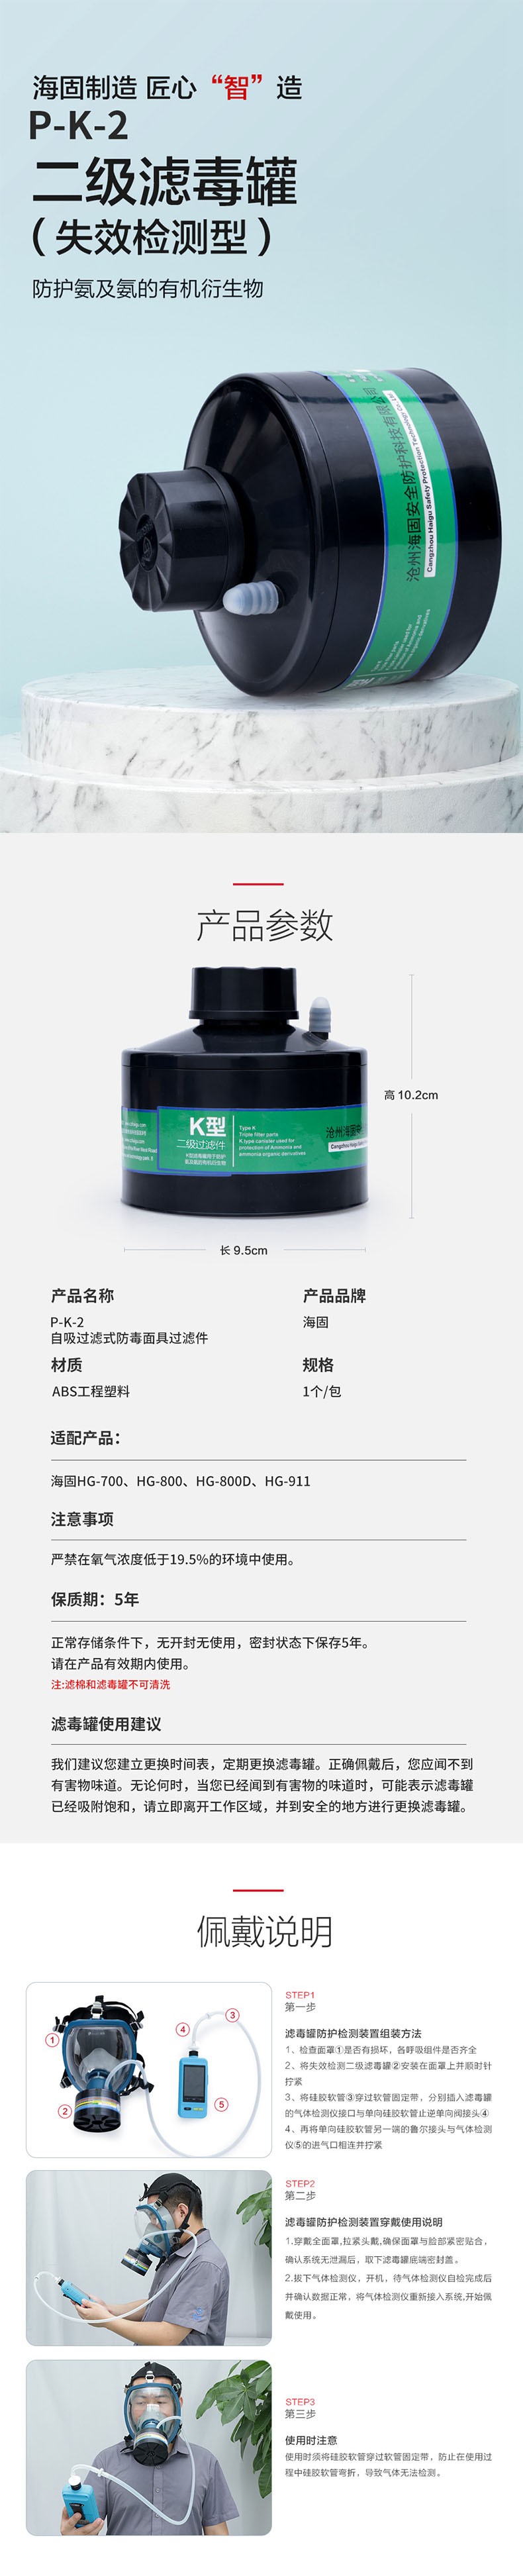 海固P-K-2二级带失效检测氨气滤毒罐图片